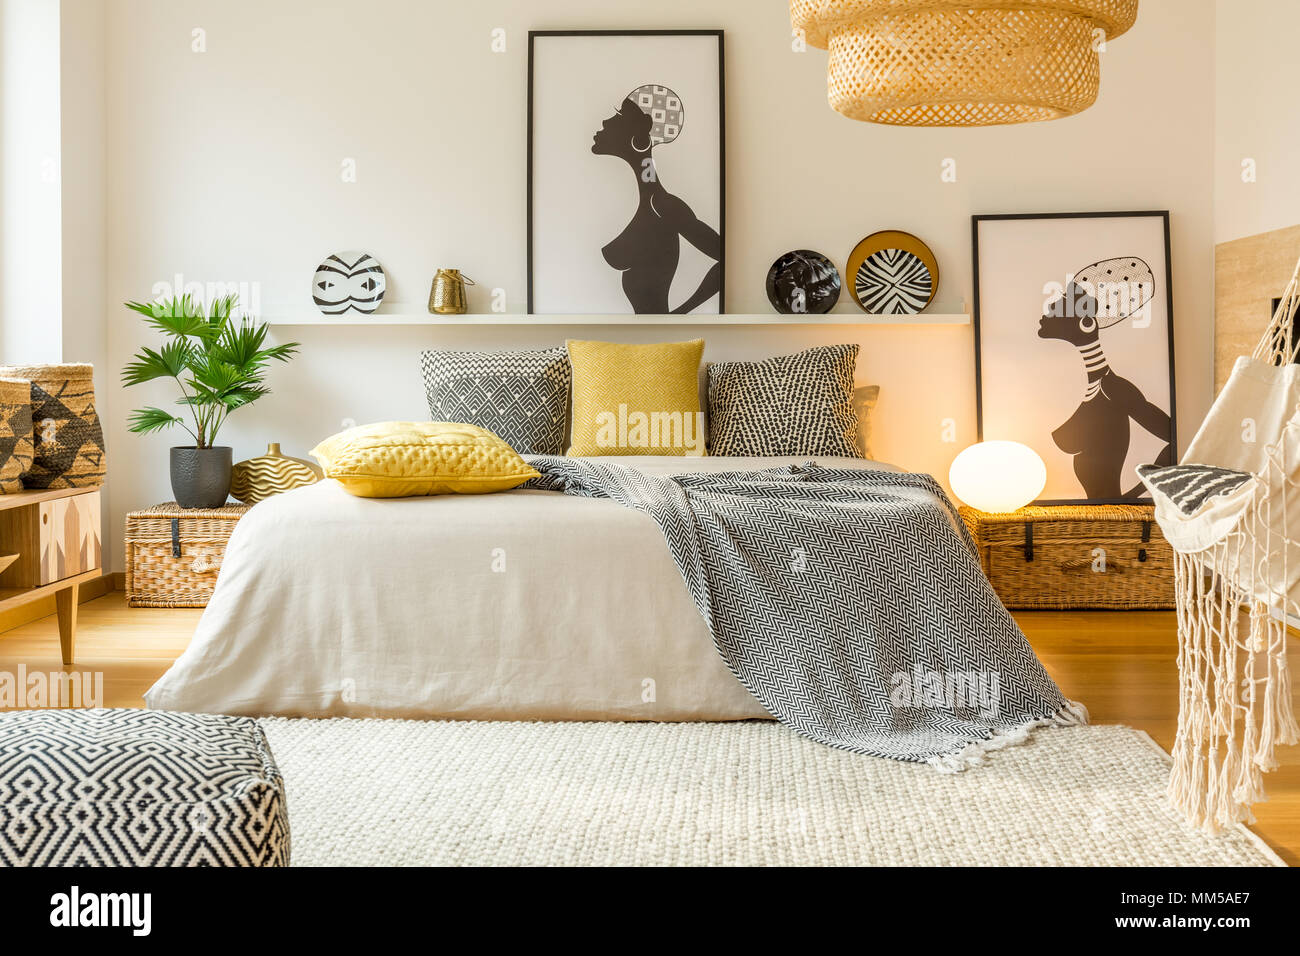 À motifs jaunes et des oreillers au lit dans une chambre moderne d'intérieur chaleureux avec des affiches et des plantes Banque D'Images